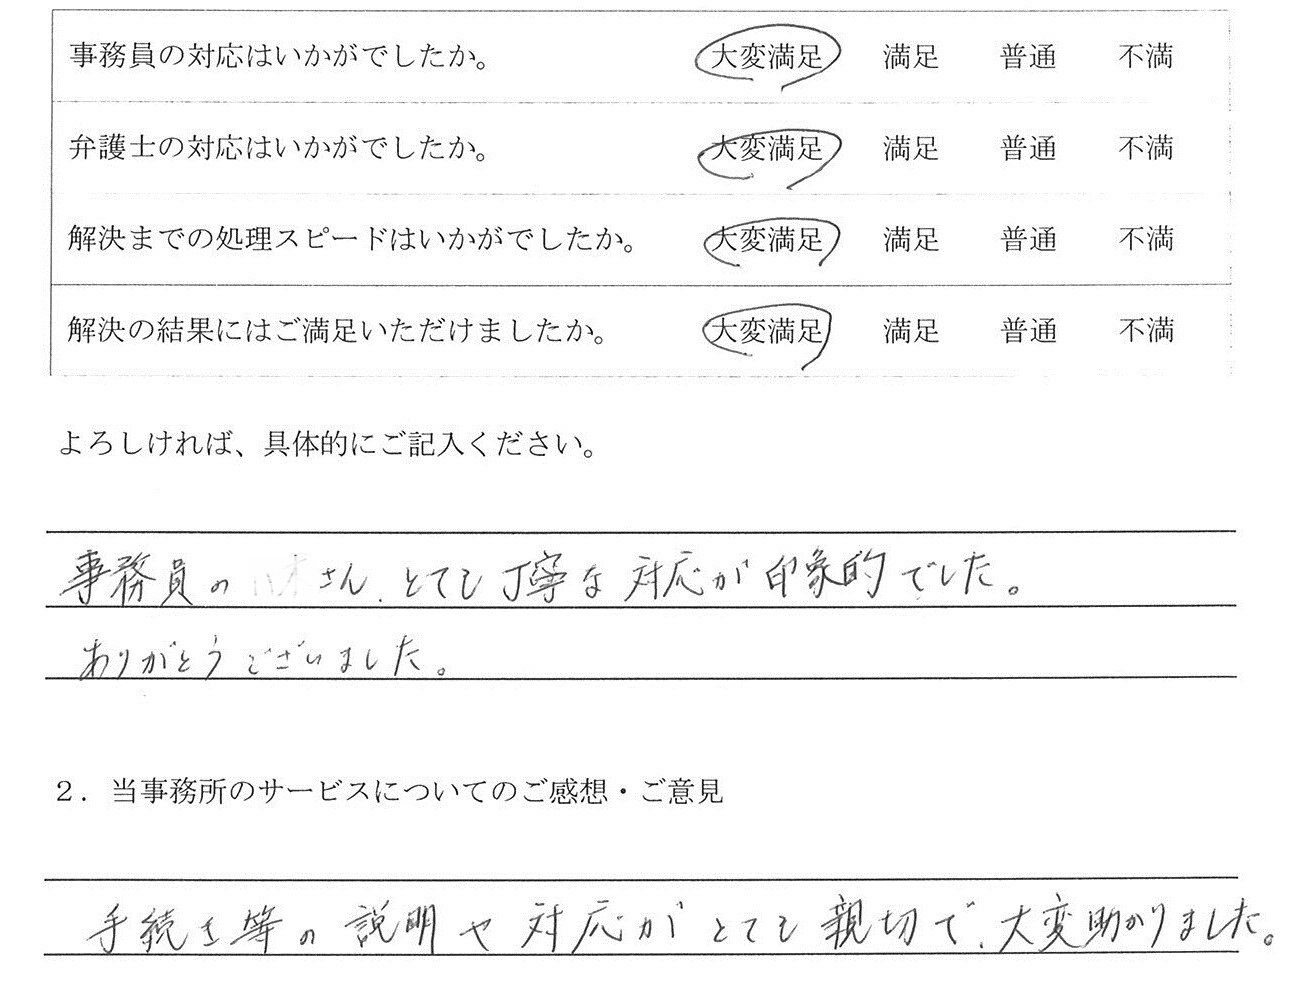 愛知県名古屋市M様のご感想　（自己破産） : 「事務員さん、とても丁寧な対応が印象的でした。ありがとうございました」

「手続き等の説明や対応がとても親切で、大変助かりました」